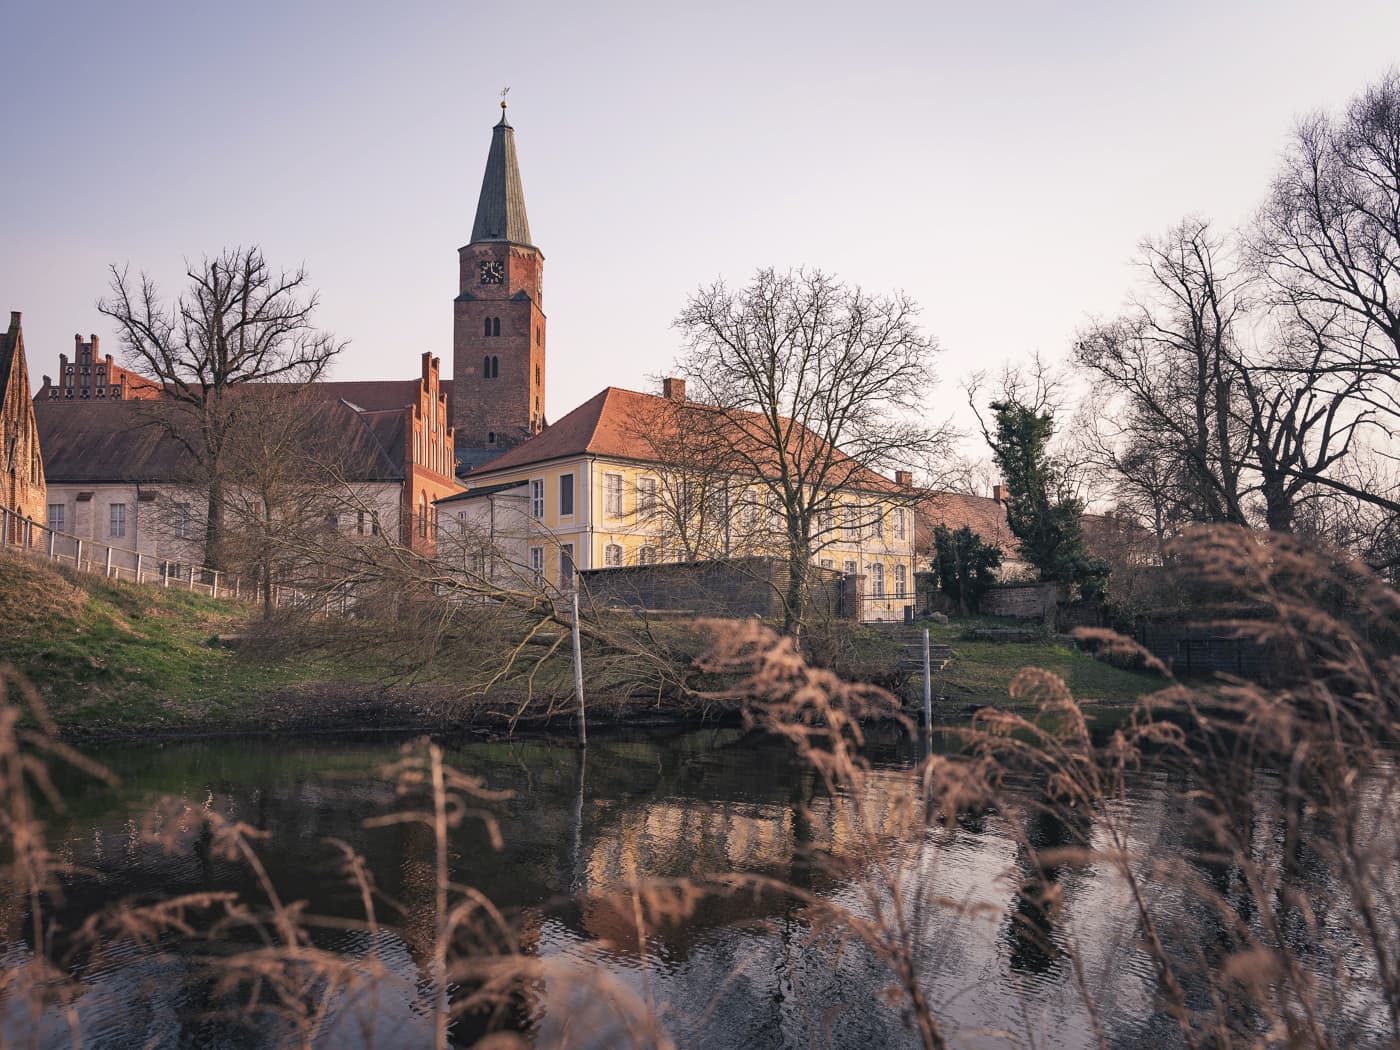 Foto vom Flußufer auf eine Insel mit verschiedenen historischen Gebäuden und einem Kirchturm